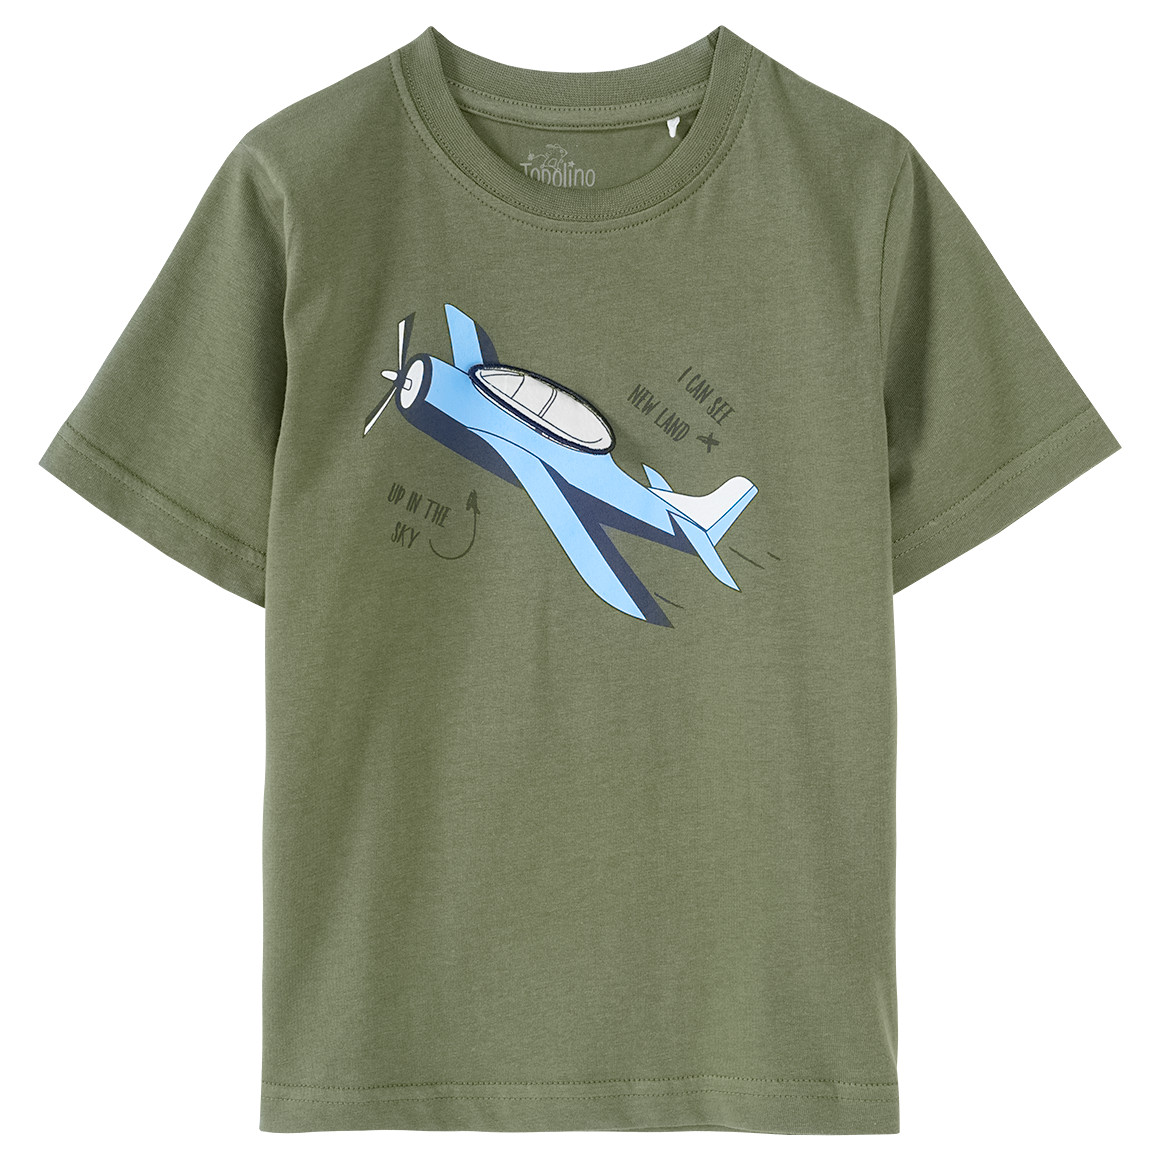 Jungen T-Shirt mit Flugzeug-Motiv von Topolino